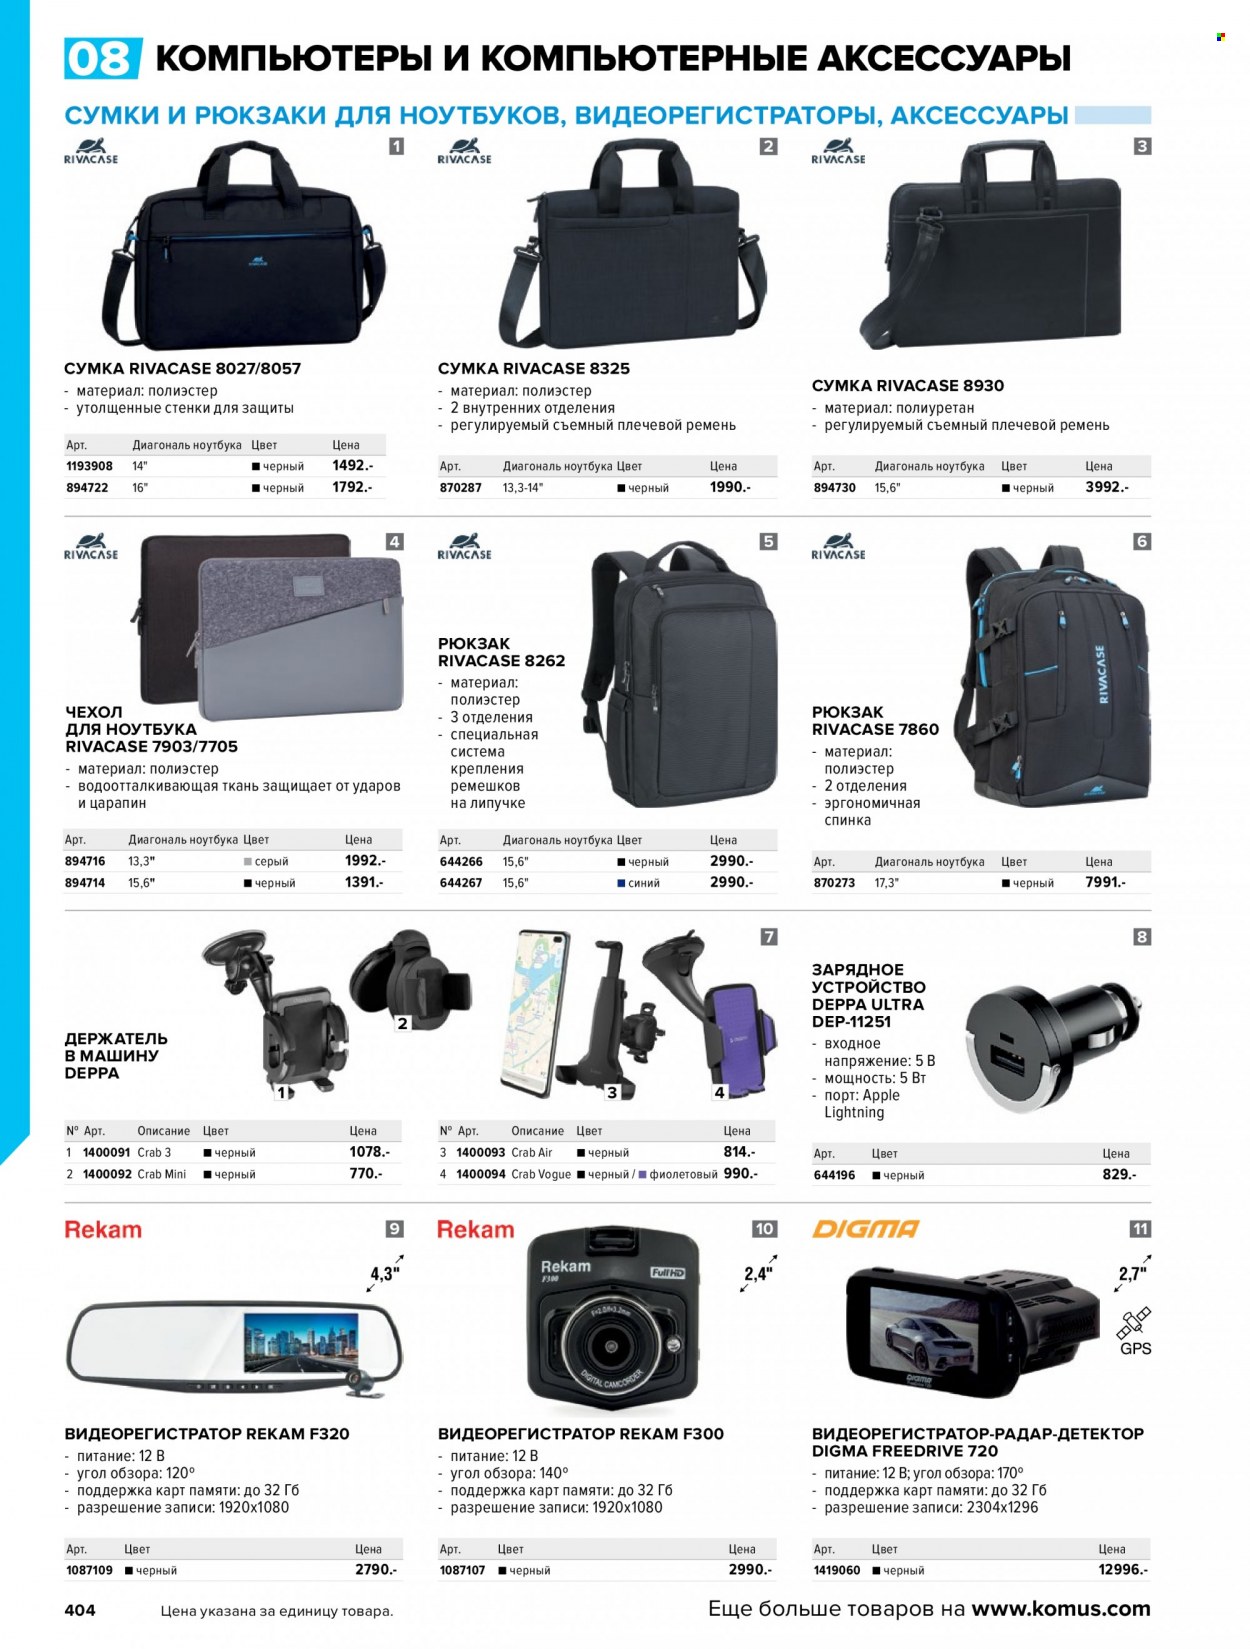 thumbnail - Каталог Комус - Товар со скидкой - детектор, зарядное устройство, Digma, Rekam, радар-детектор, видеорегистратор, рюкзак, сумка. Страница 406.